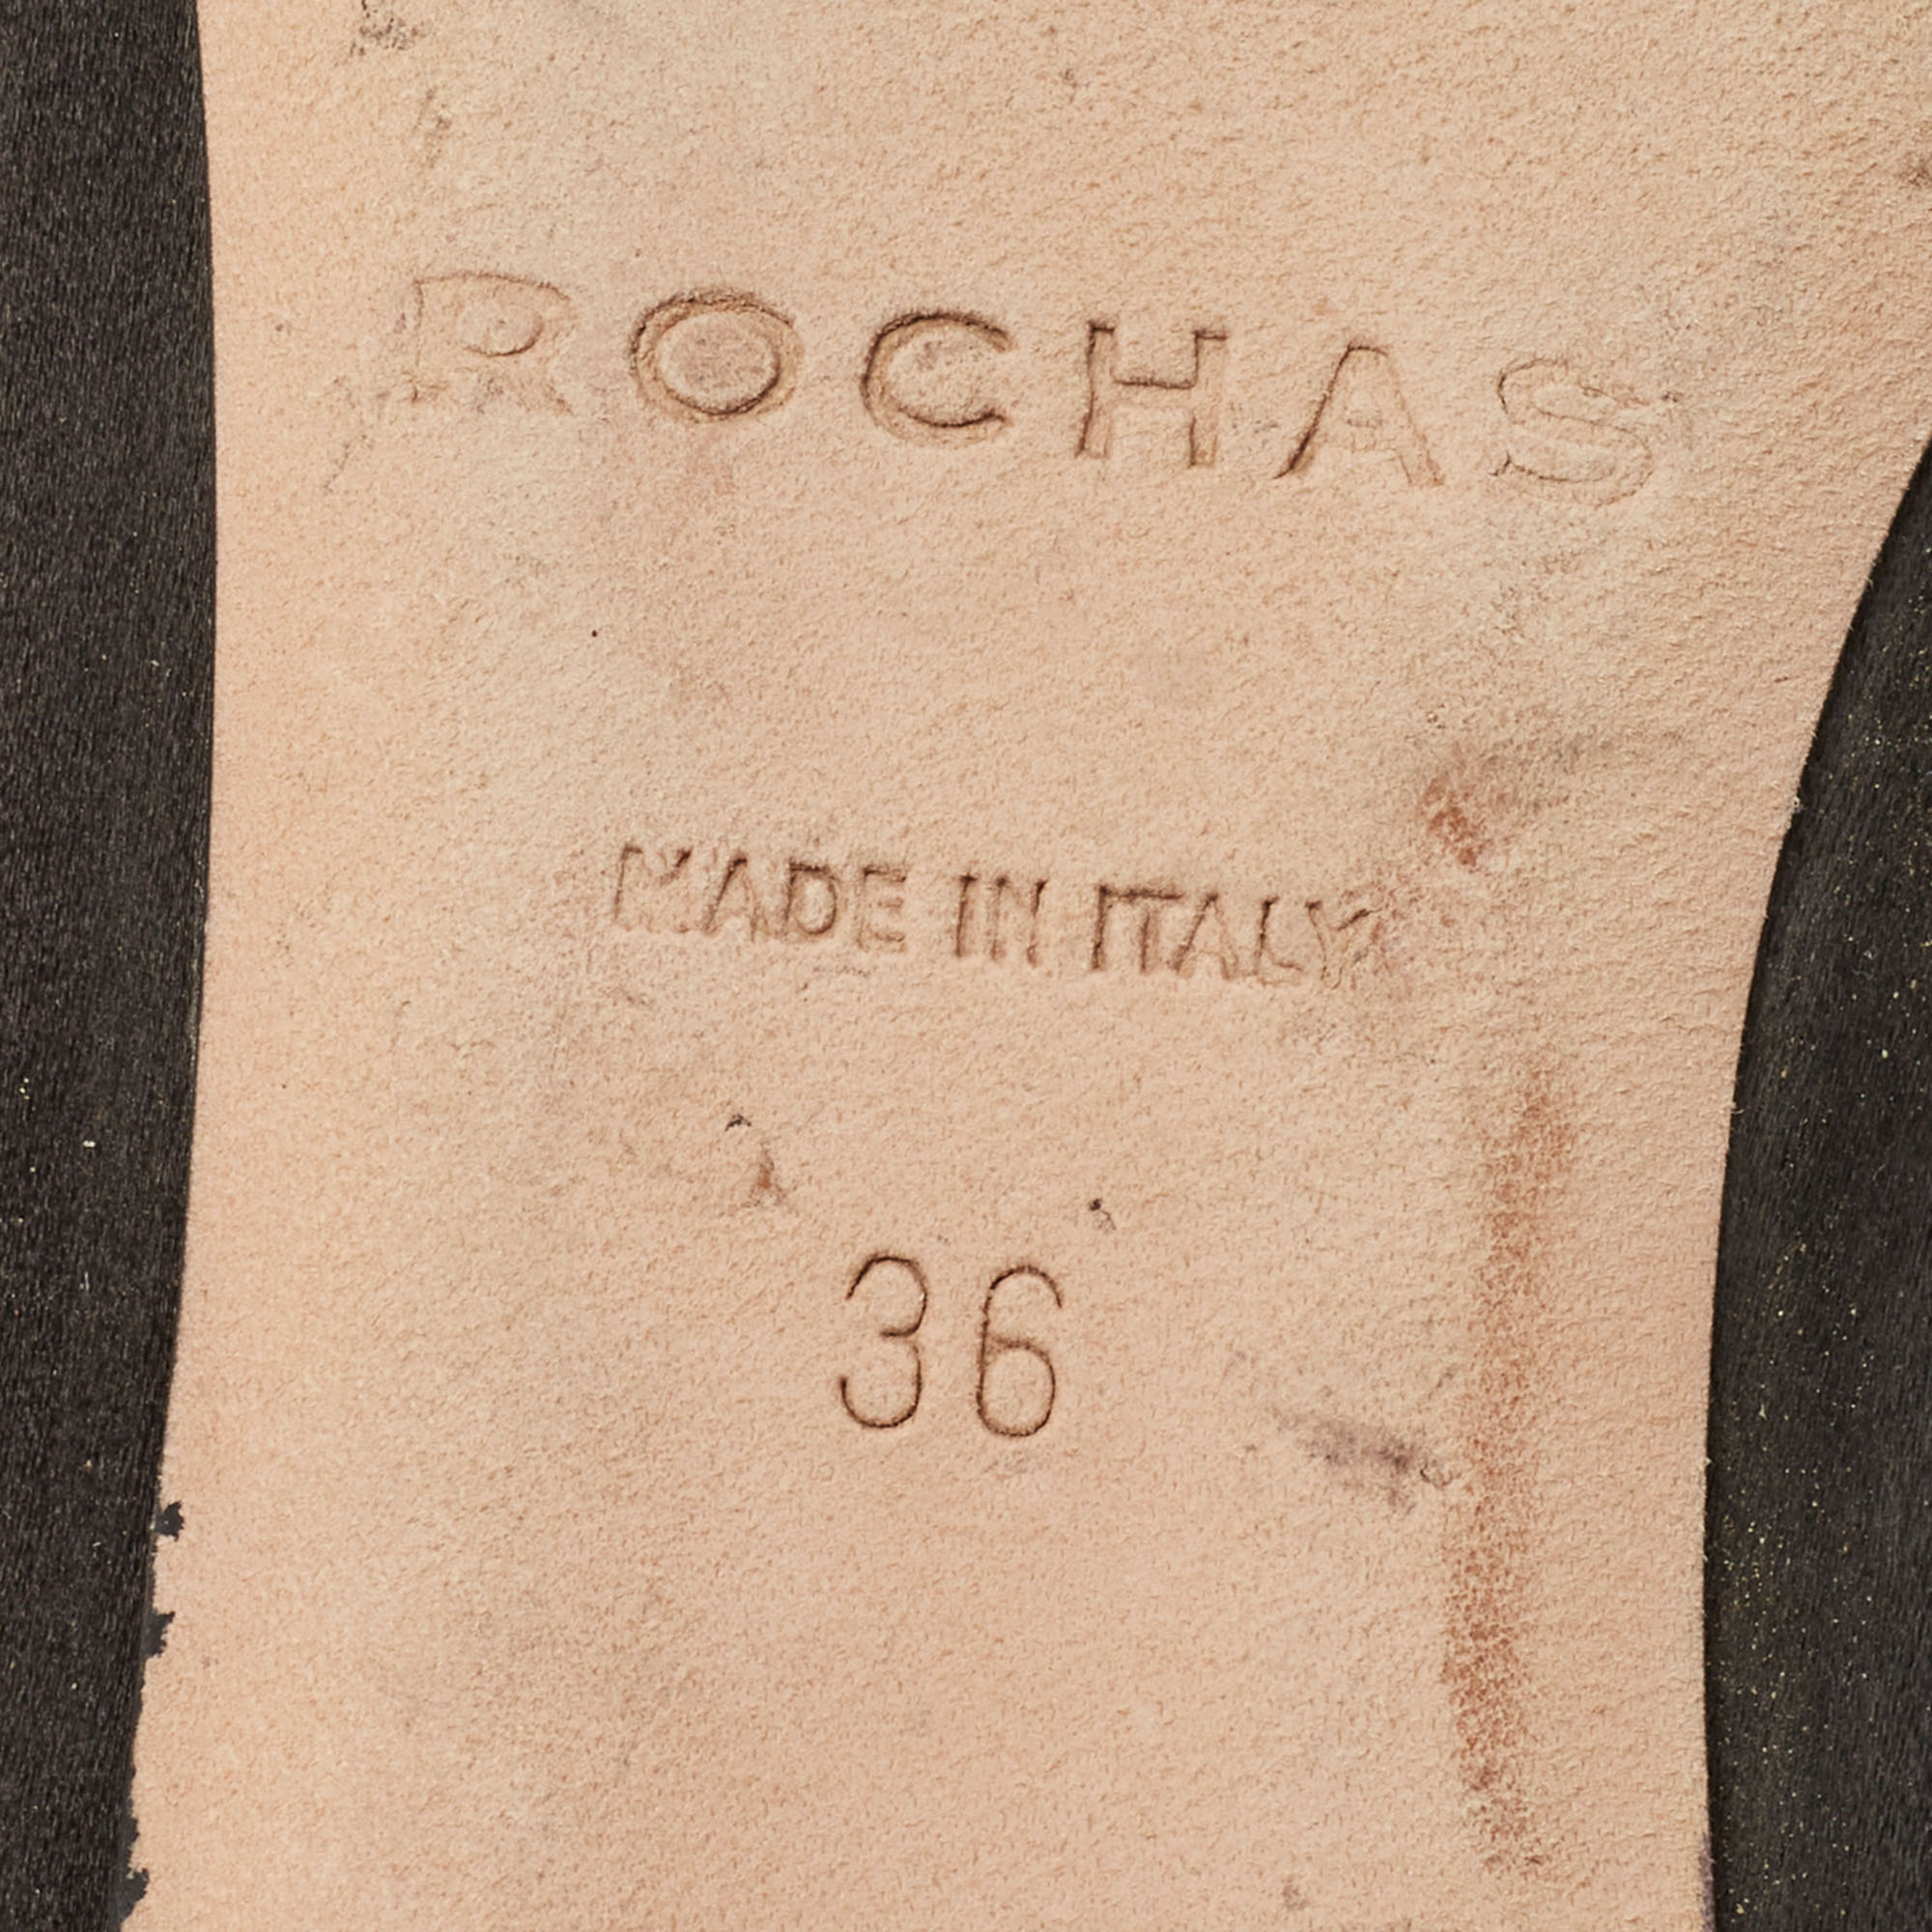 Rochas Black Satin Crystal Embellished Flat Slingback  Sandals Size 36